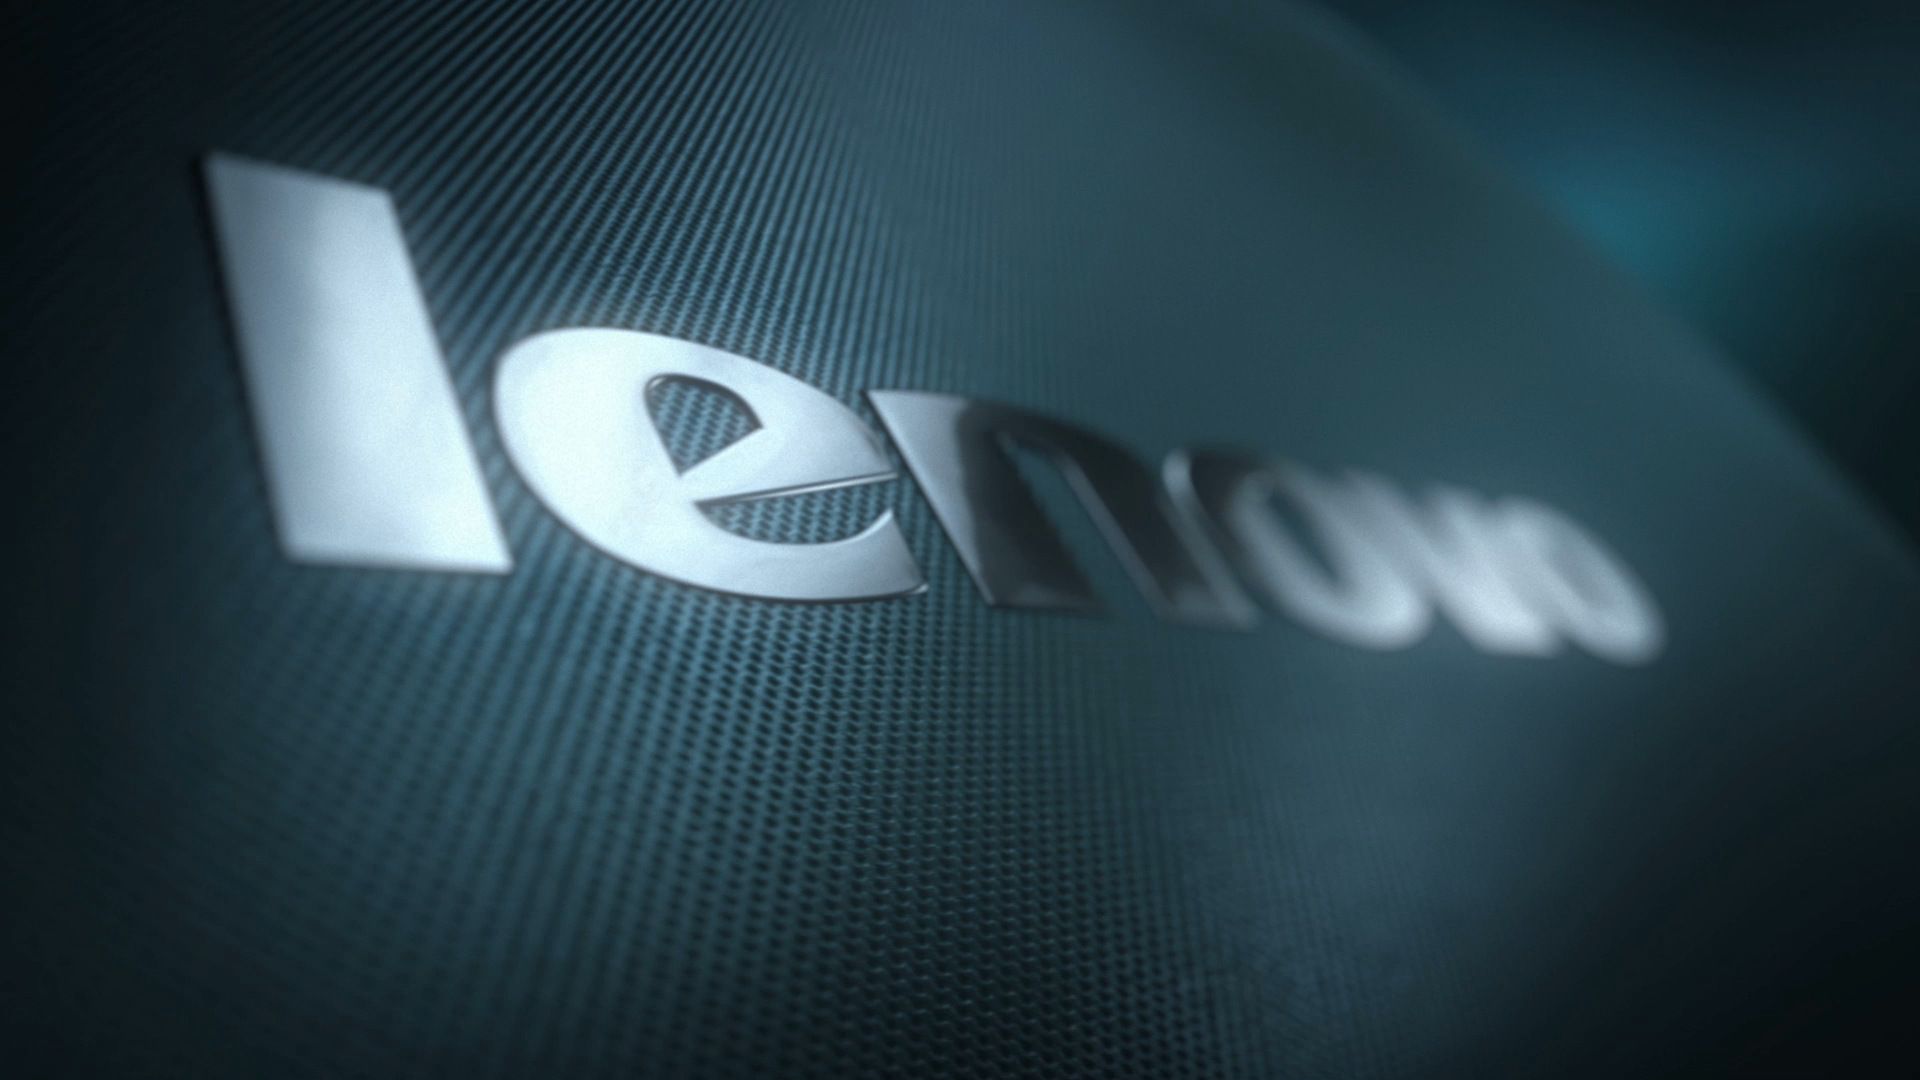 Tải hình nền Lenovo độ phân giải cao và thưởng thức những hình ảnh đẹp nhất của Lenovo trên màn hình của bạn!